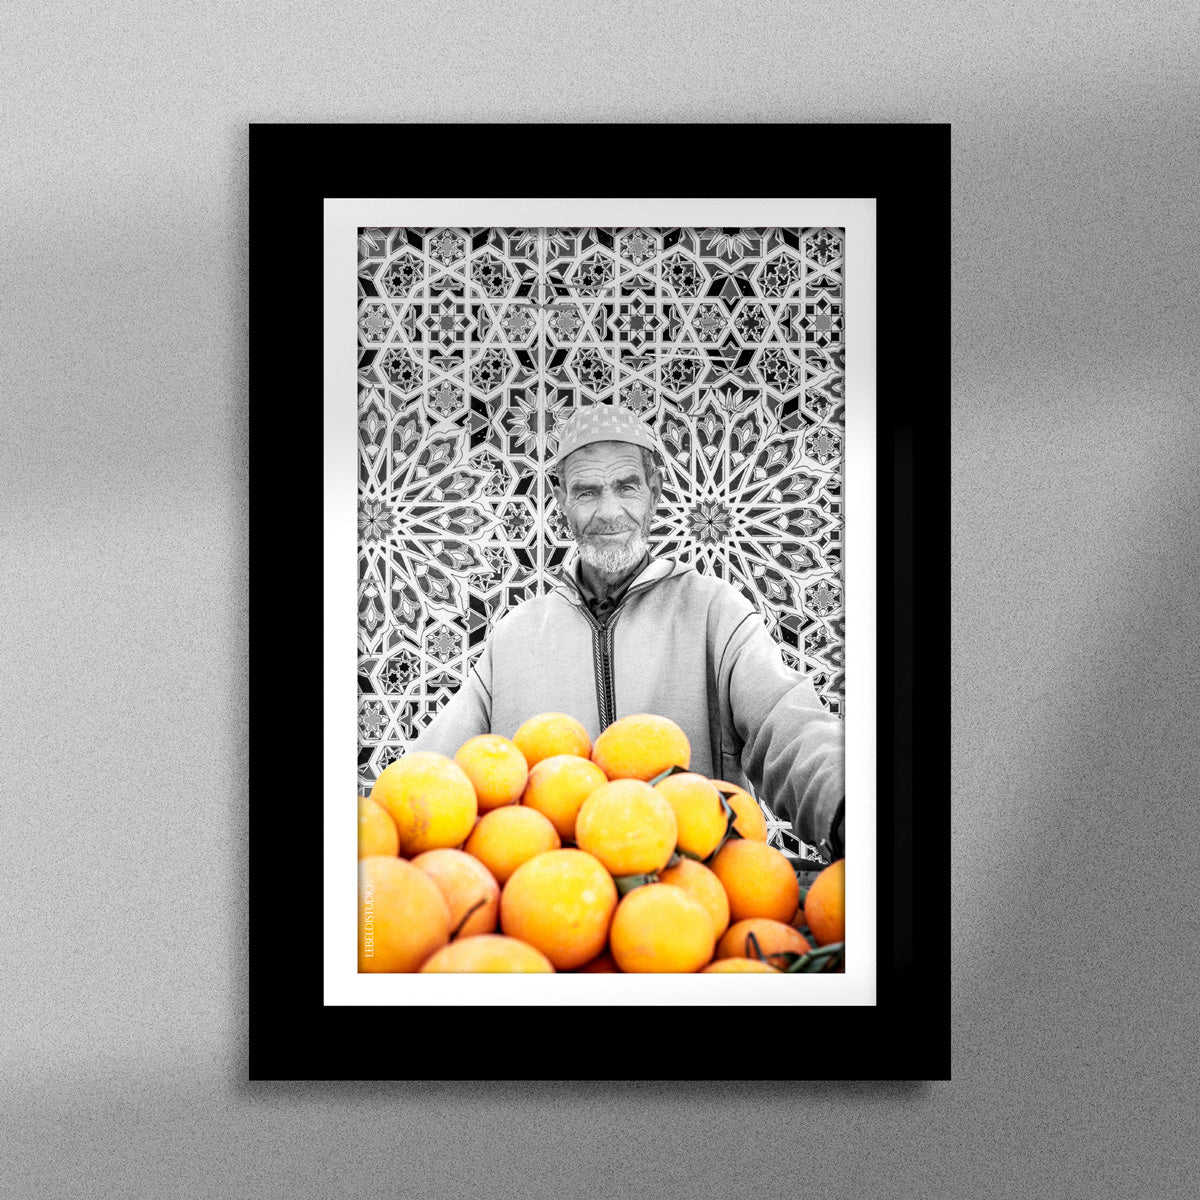 Tableau décoratif en noir et blanc d'un vieux marchand d'oranges très souriant, encadré dans un cadre noir - Format A5.